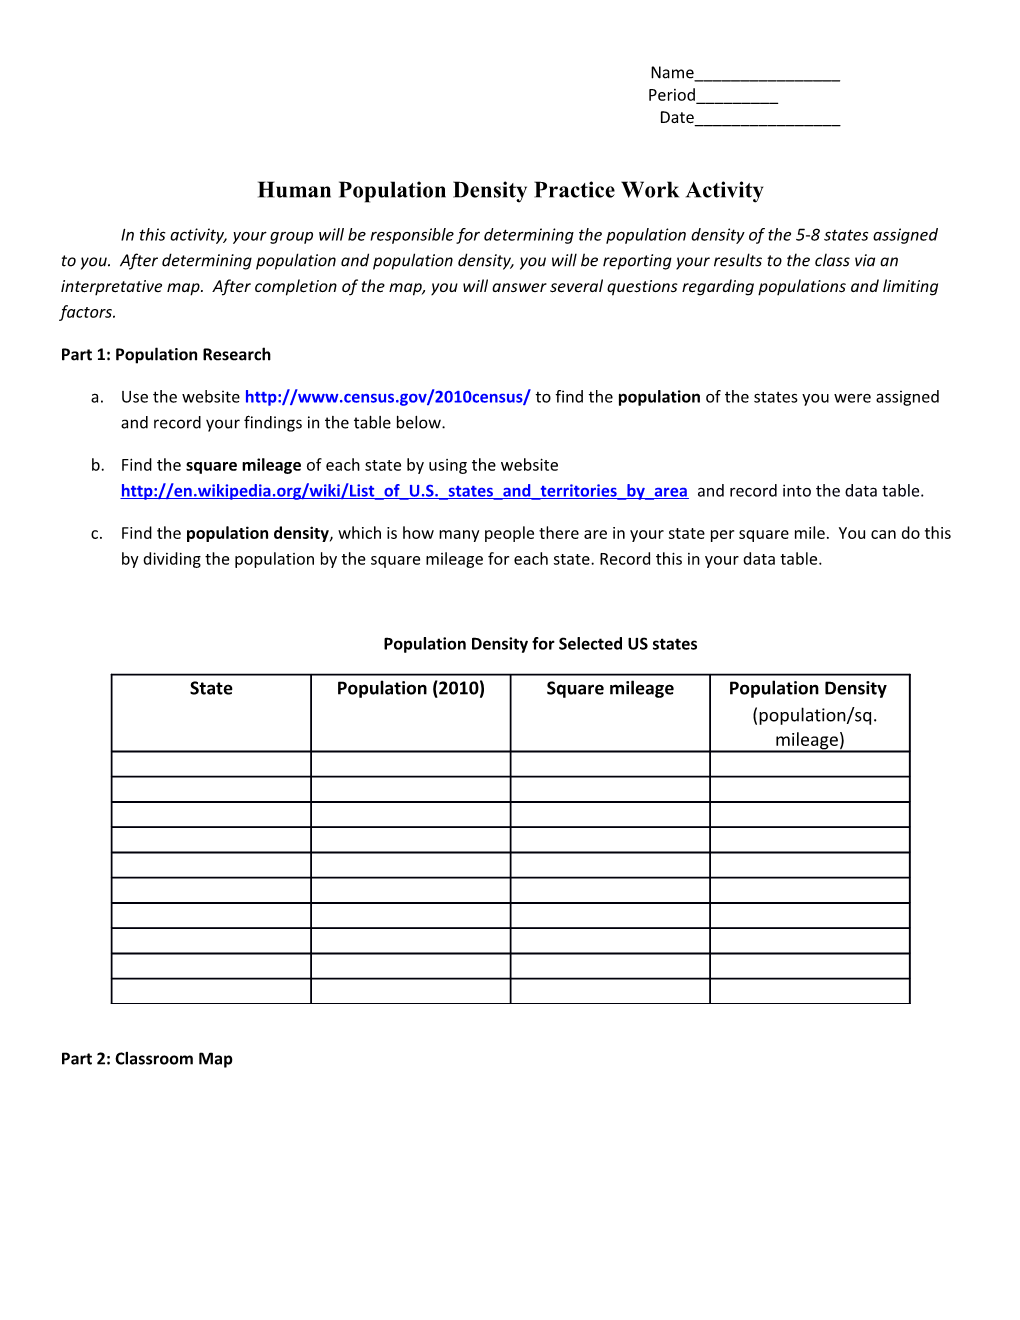 Human Population Density Practice Work Activity s1